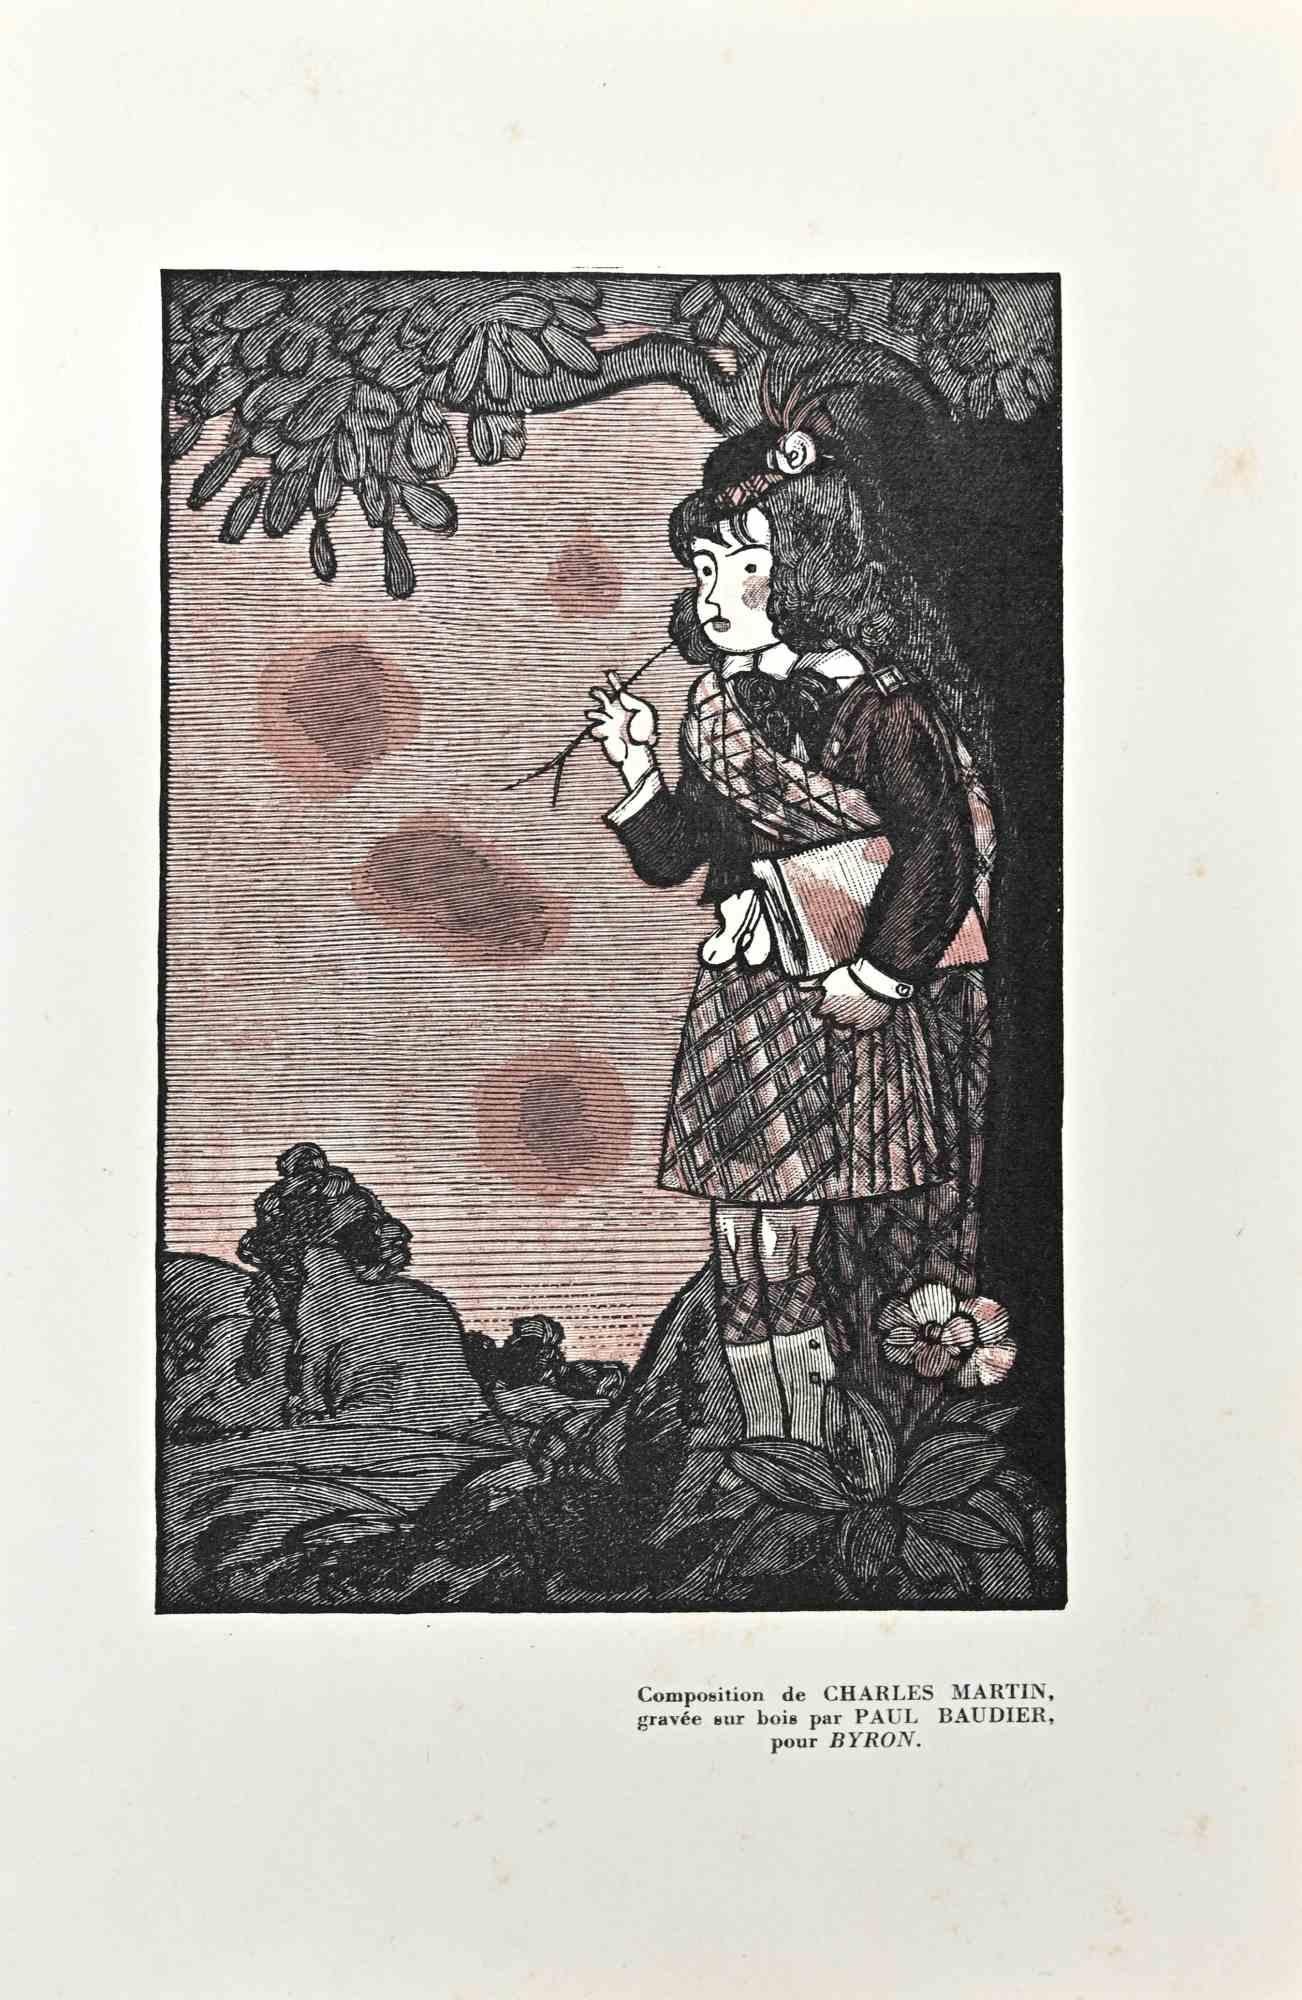 Das Mädchen im Wald ist ein Original-Holzschnitt auf elfenbeinfarbenem Papier von Paul Baudier (1881-1962) aus den 1930er Jahren.

Rechts unten Beschreibung in französischer Sprache.

Sehr guter Zustand.

Paul Baudier, (geboren am 18. Oktober 1881